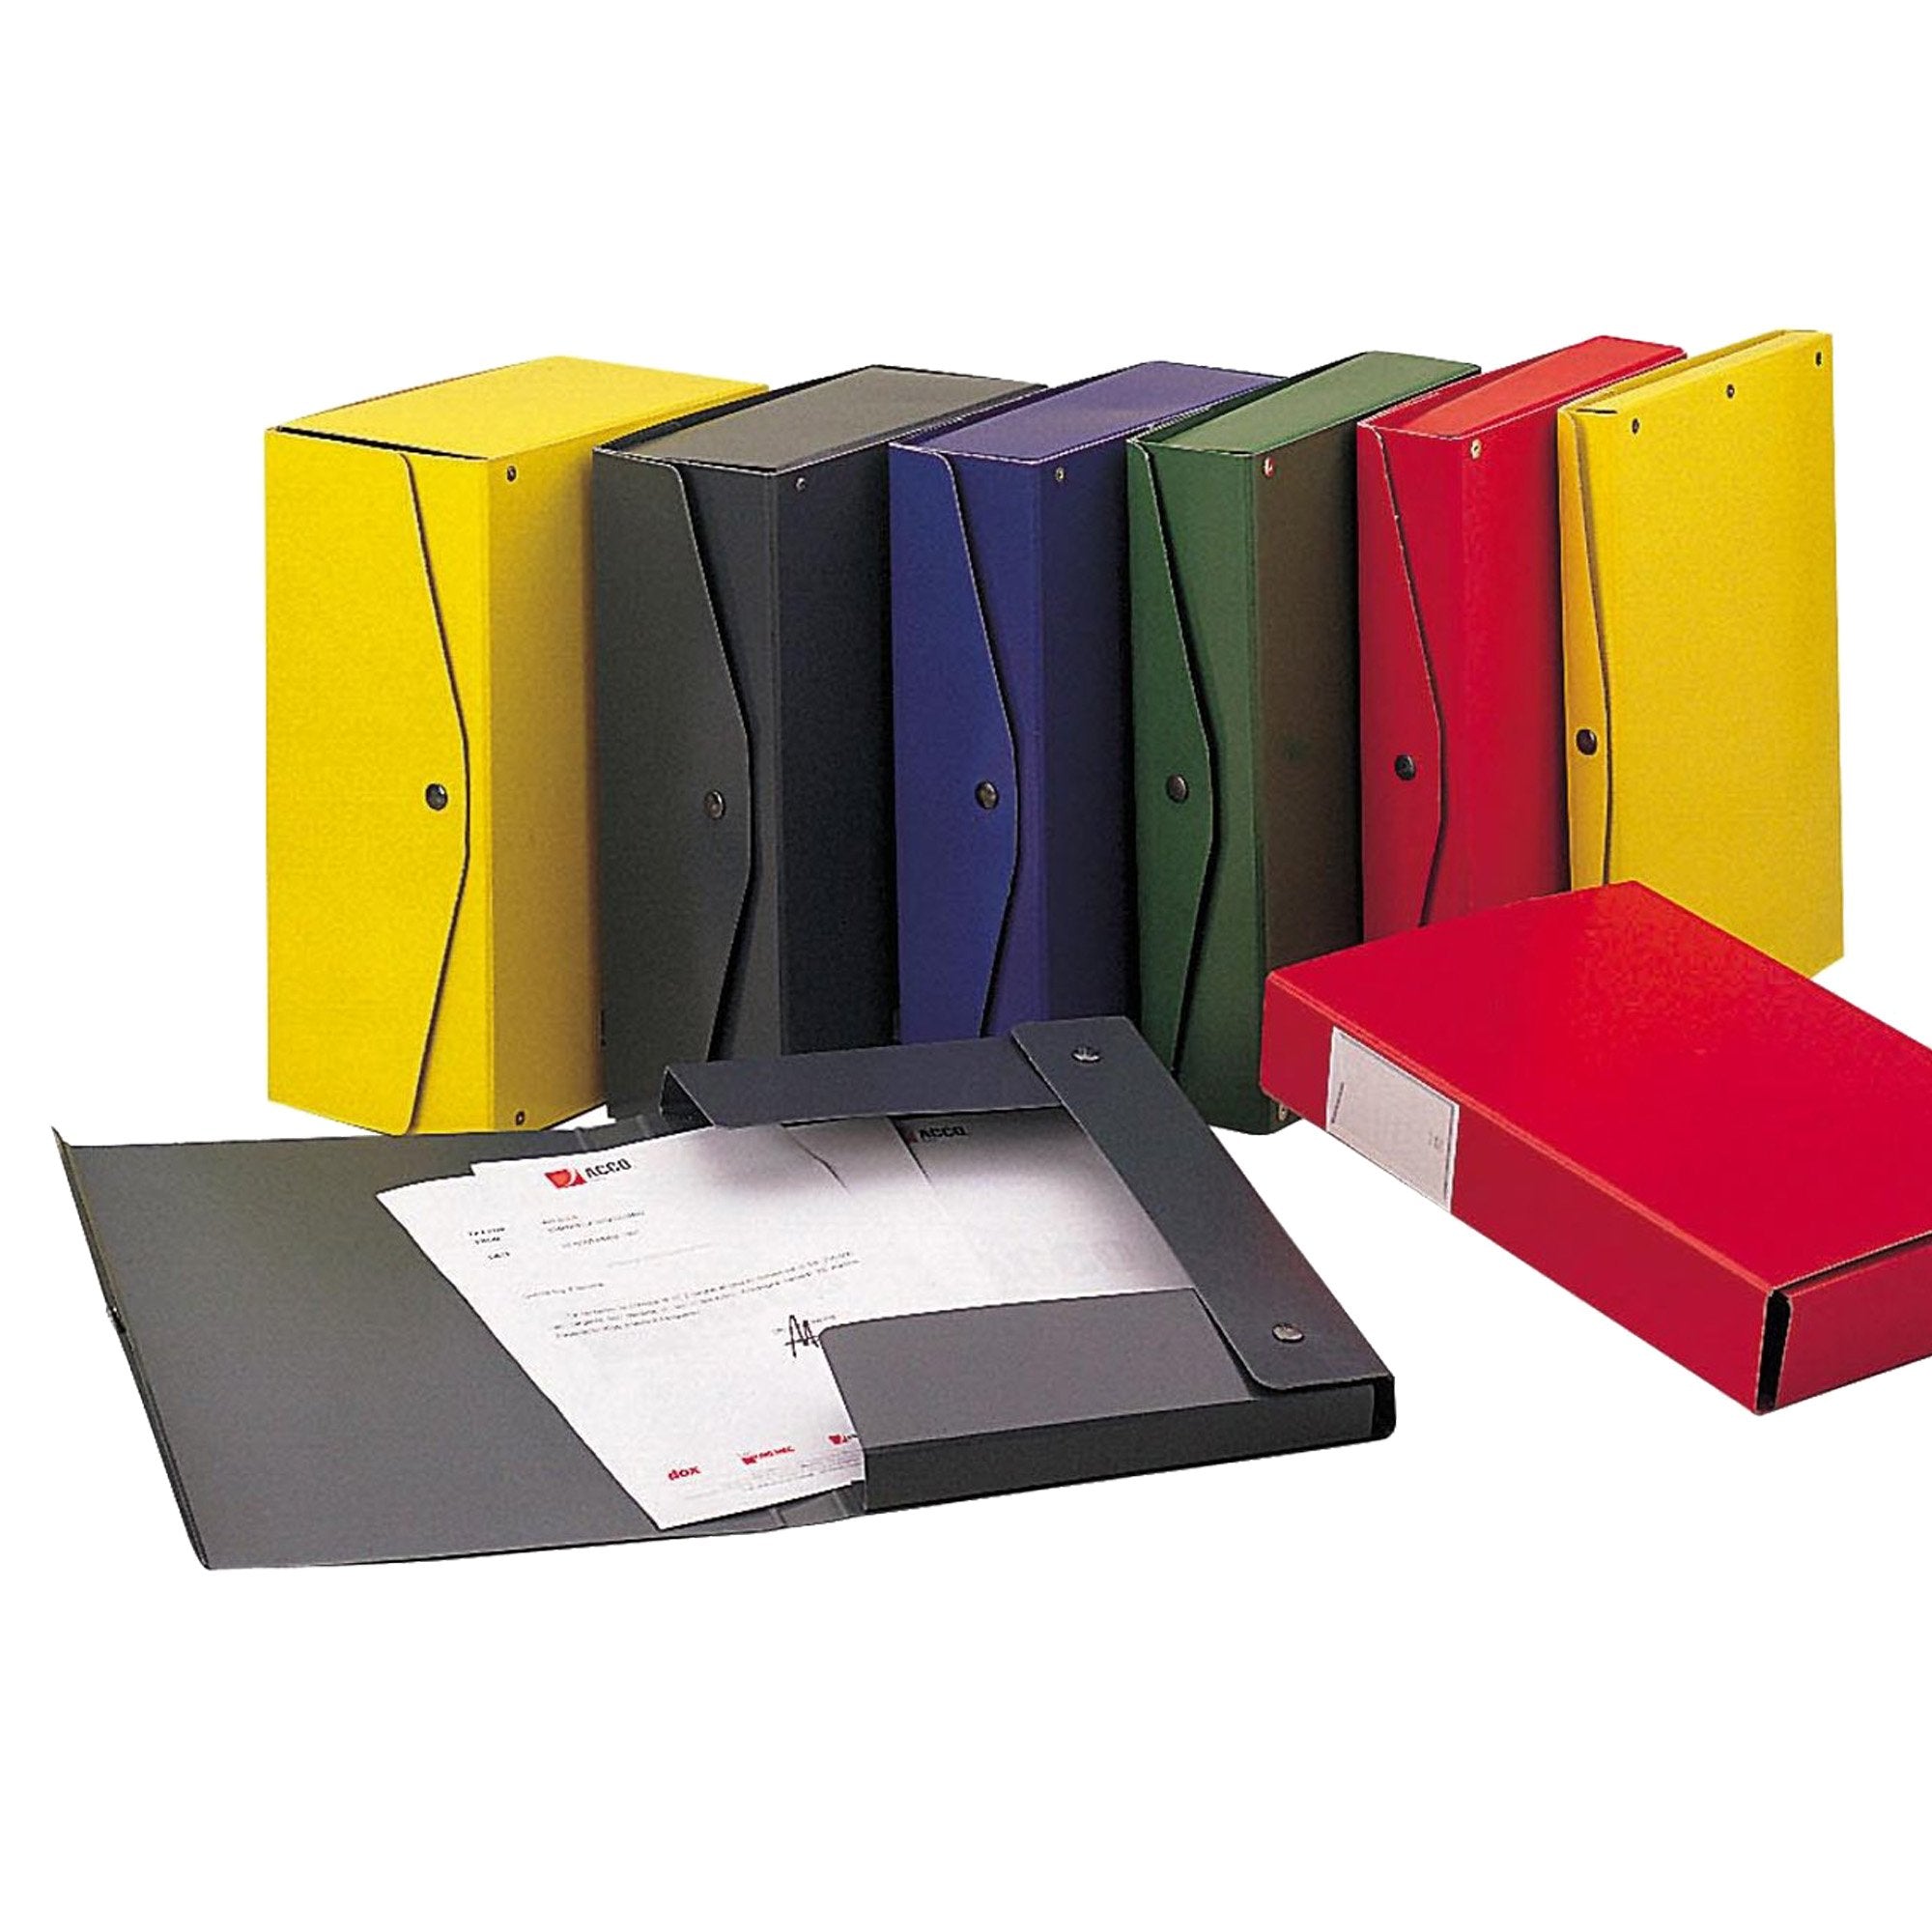 king-mec-scatola-archivio-project-4-giallo-25x35cm-dorso-4cm